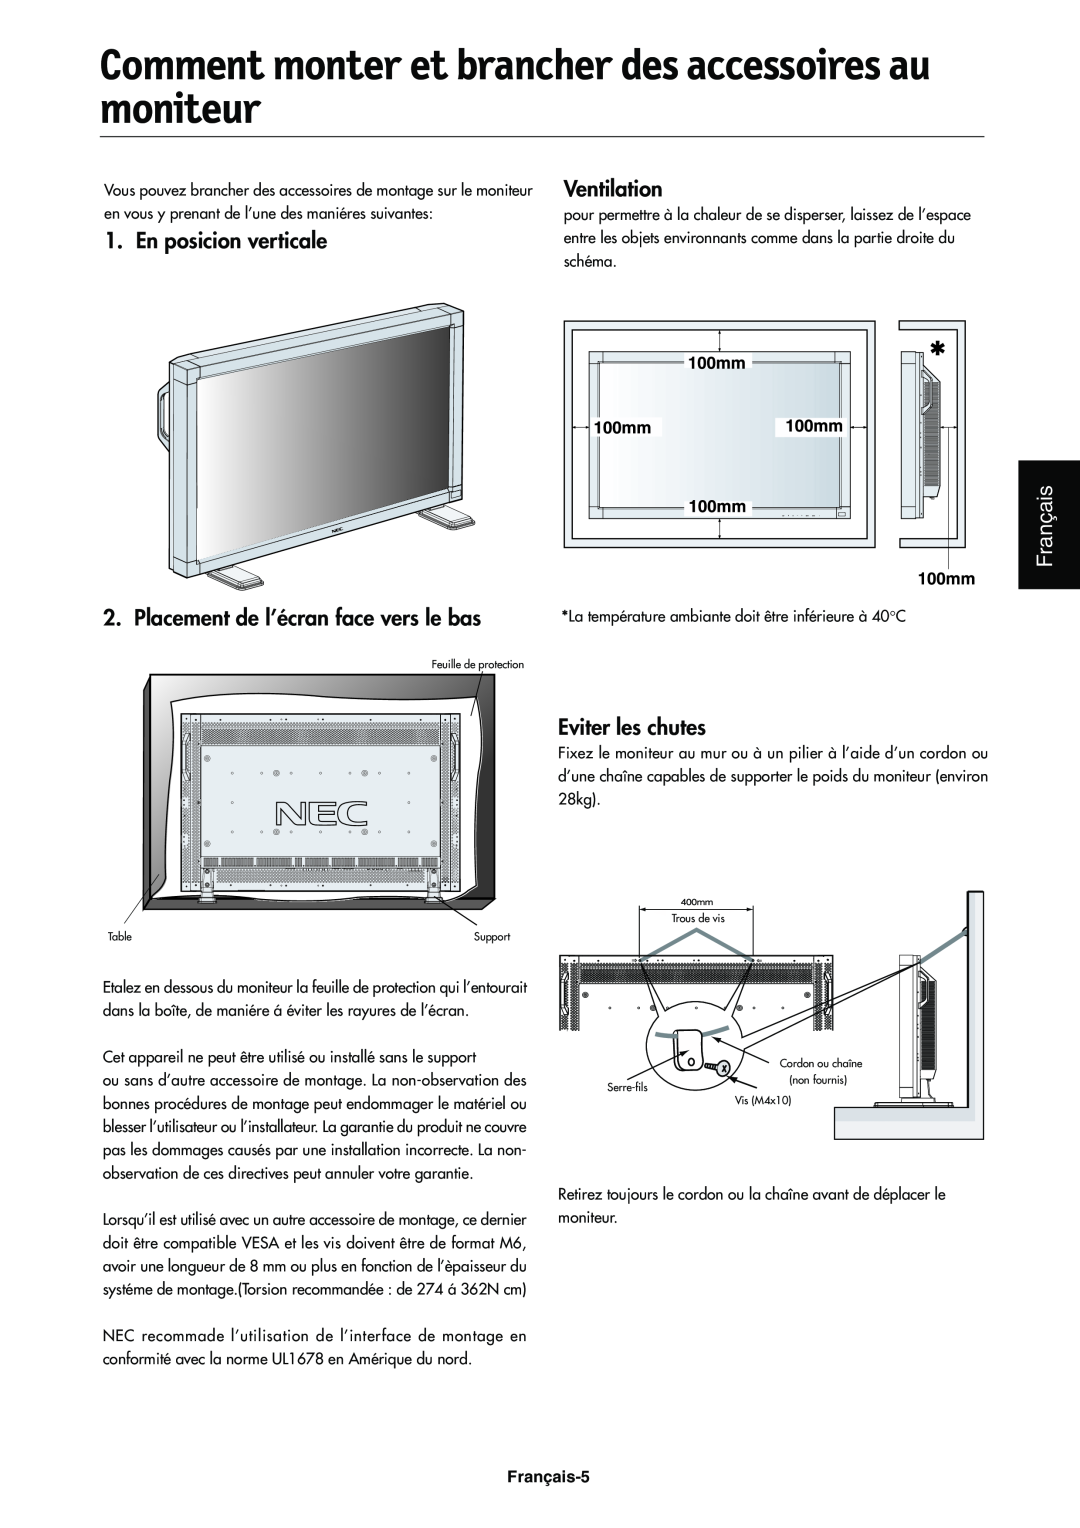 NEC LCD4000e manual En posicion verticale, Ventilation, Français, Placement de l’écran face vers le bas, Eviter les chutes 